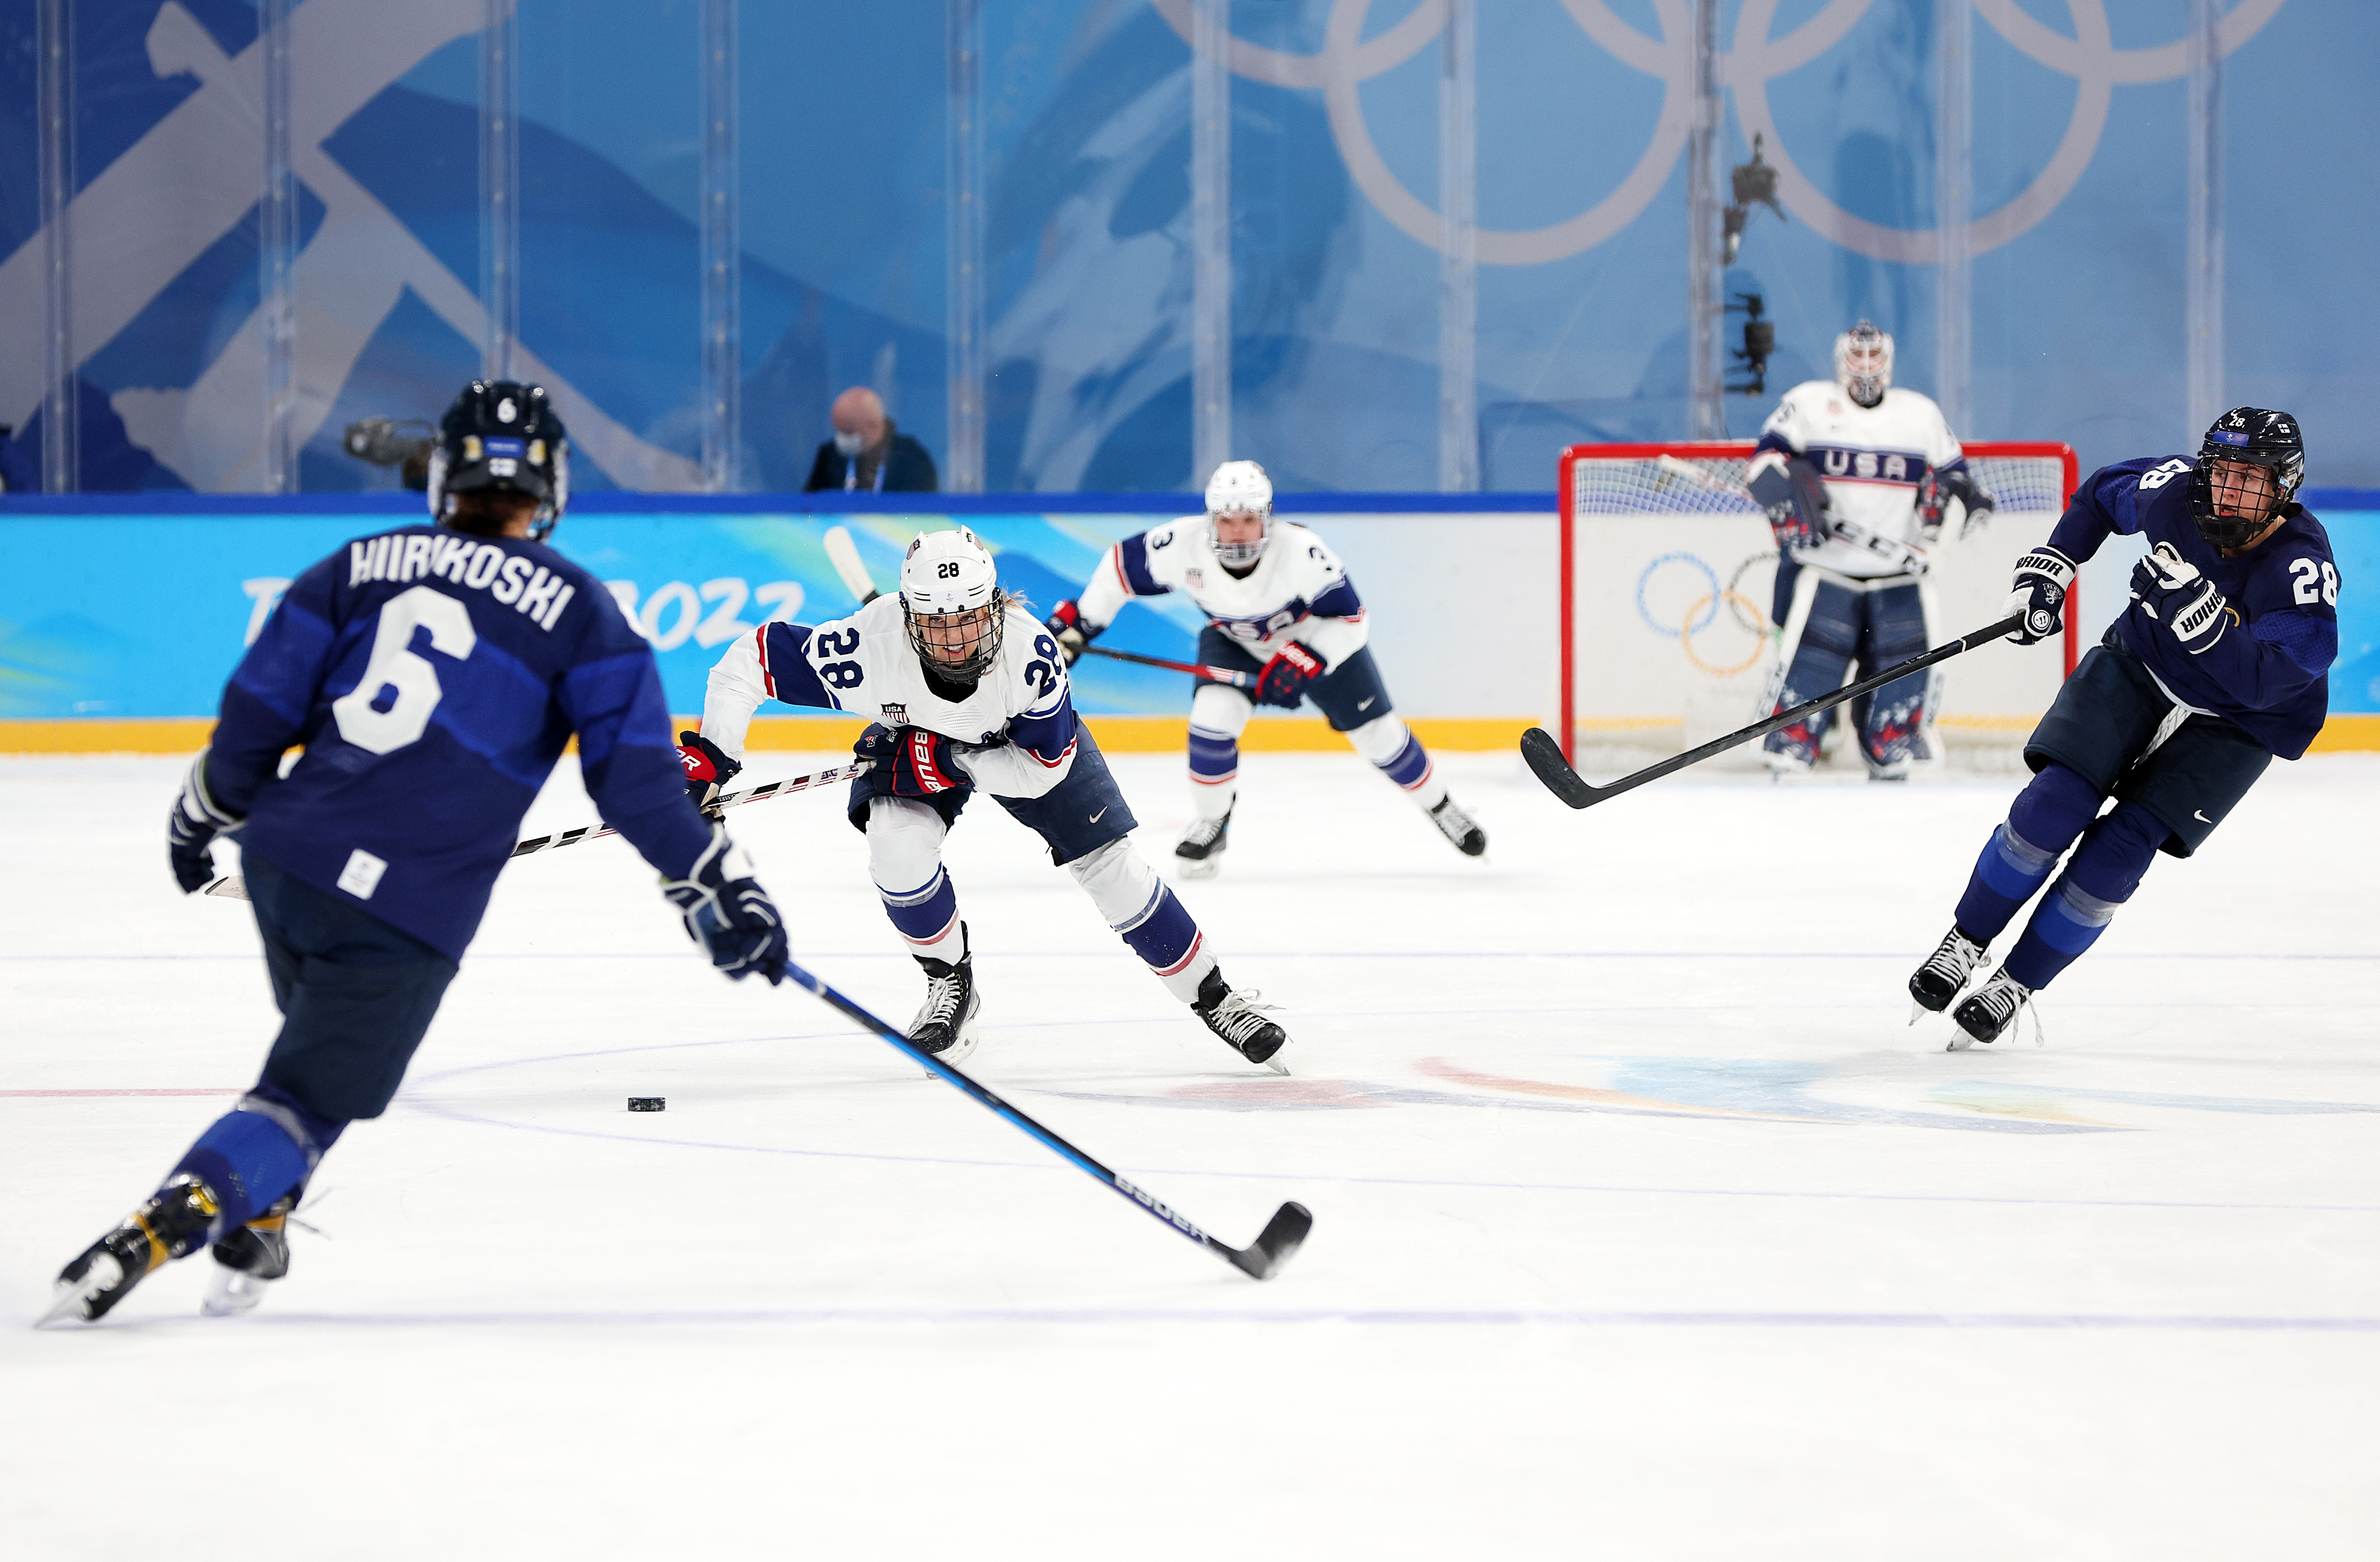 Ice Hockey – Beijing 2022 Winter Olympics Day -1